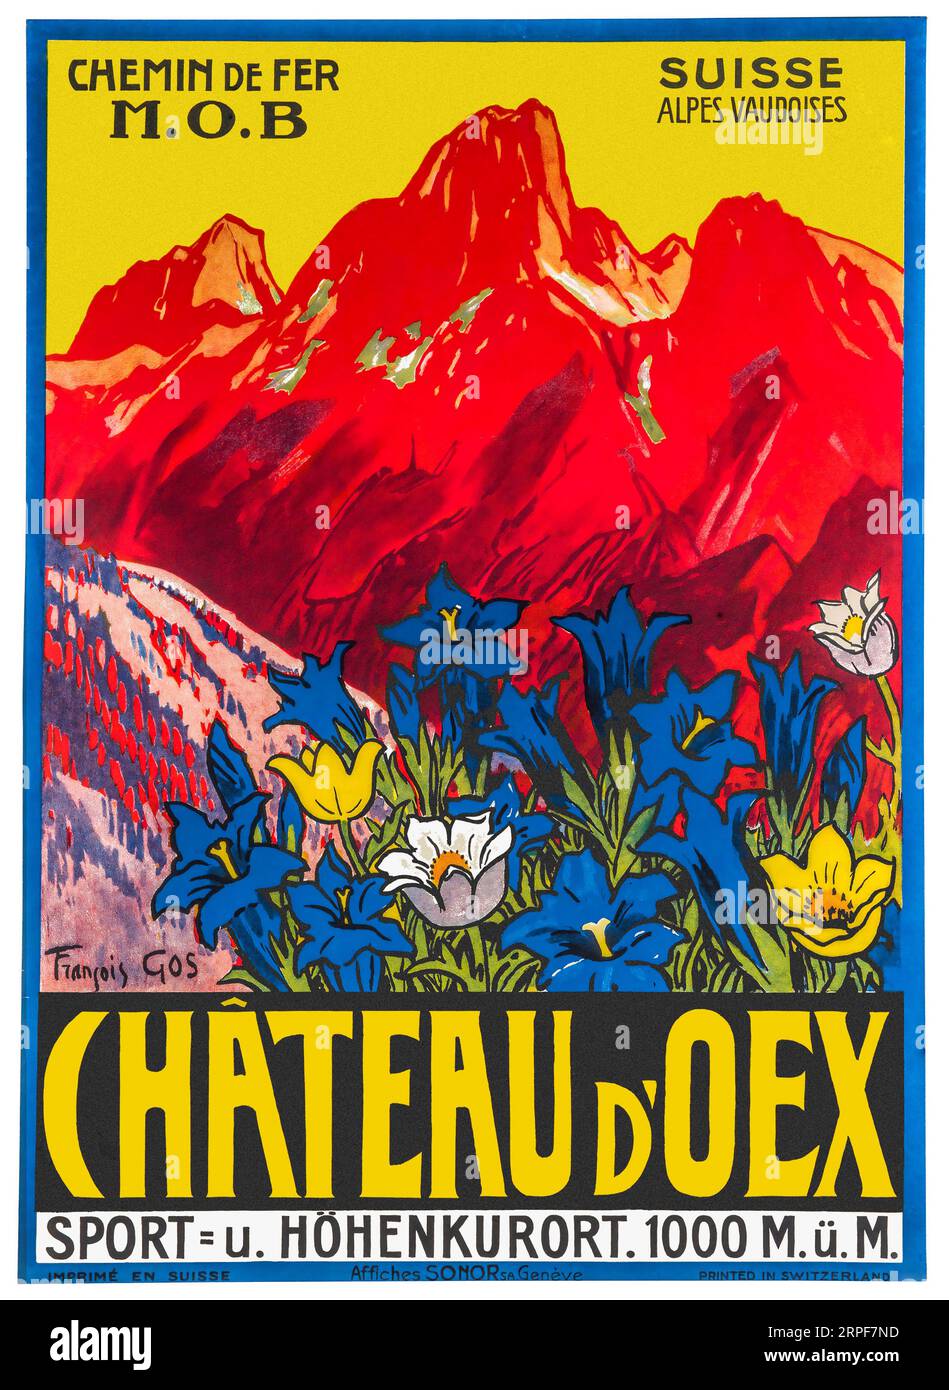 Poster di viaggio estivo dello Chateau d'Oex del 1930 dell'artista svizzero Francois Gos che mostra genziana e altri fiori insieme alle montagne Foto Stock